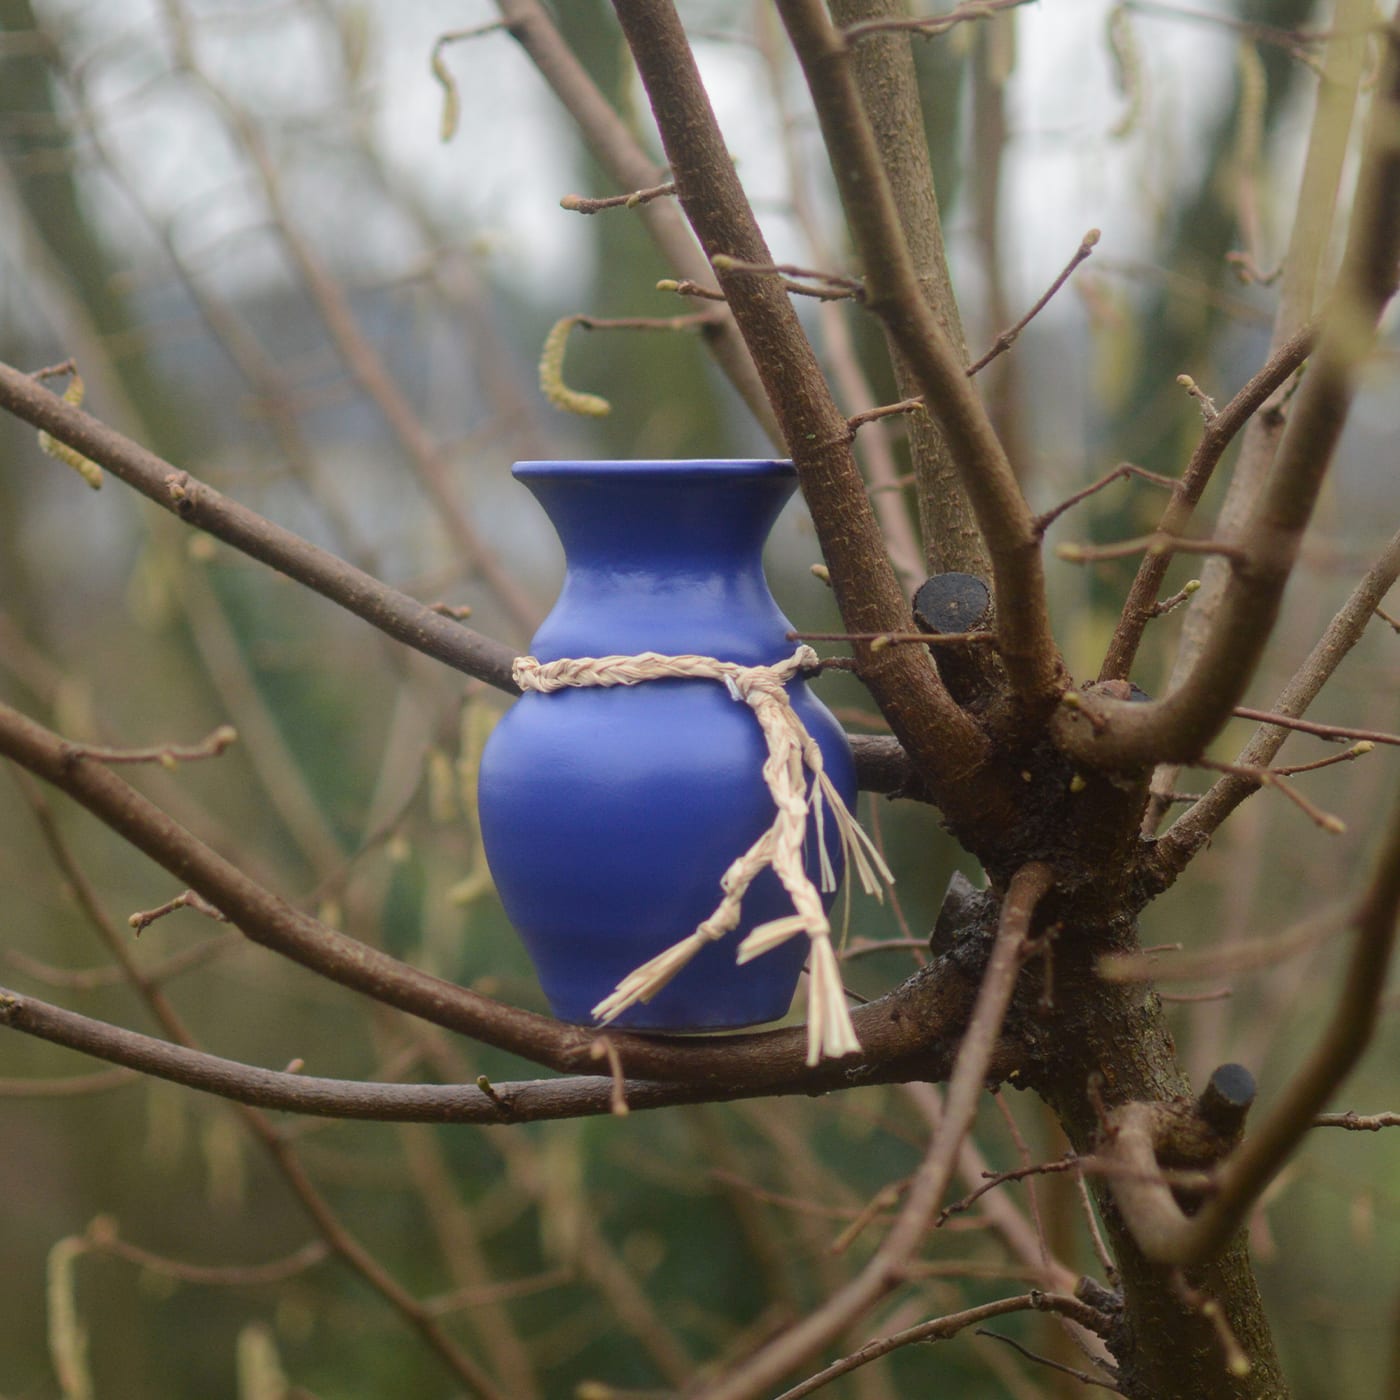 Origins Blue Vase - Materia Creative Studio